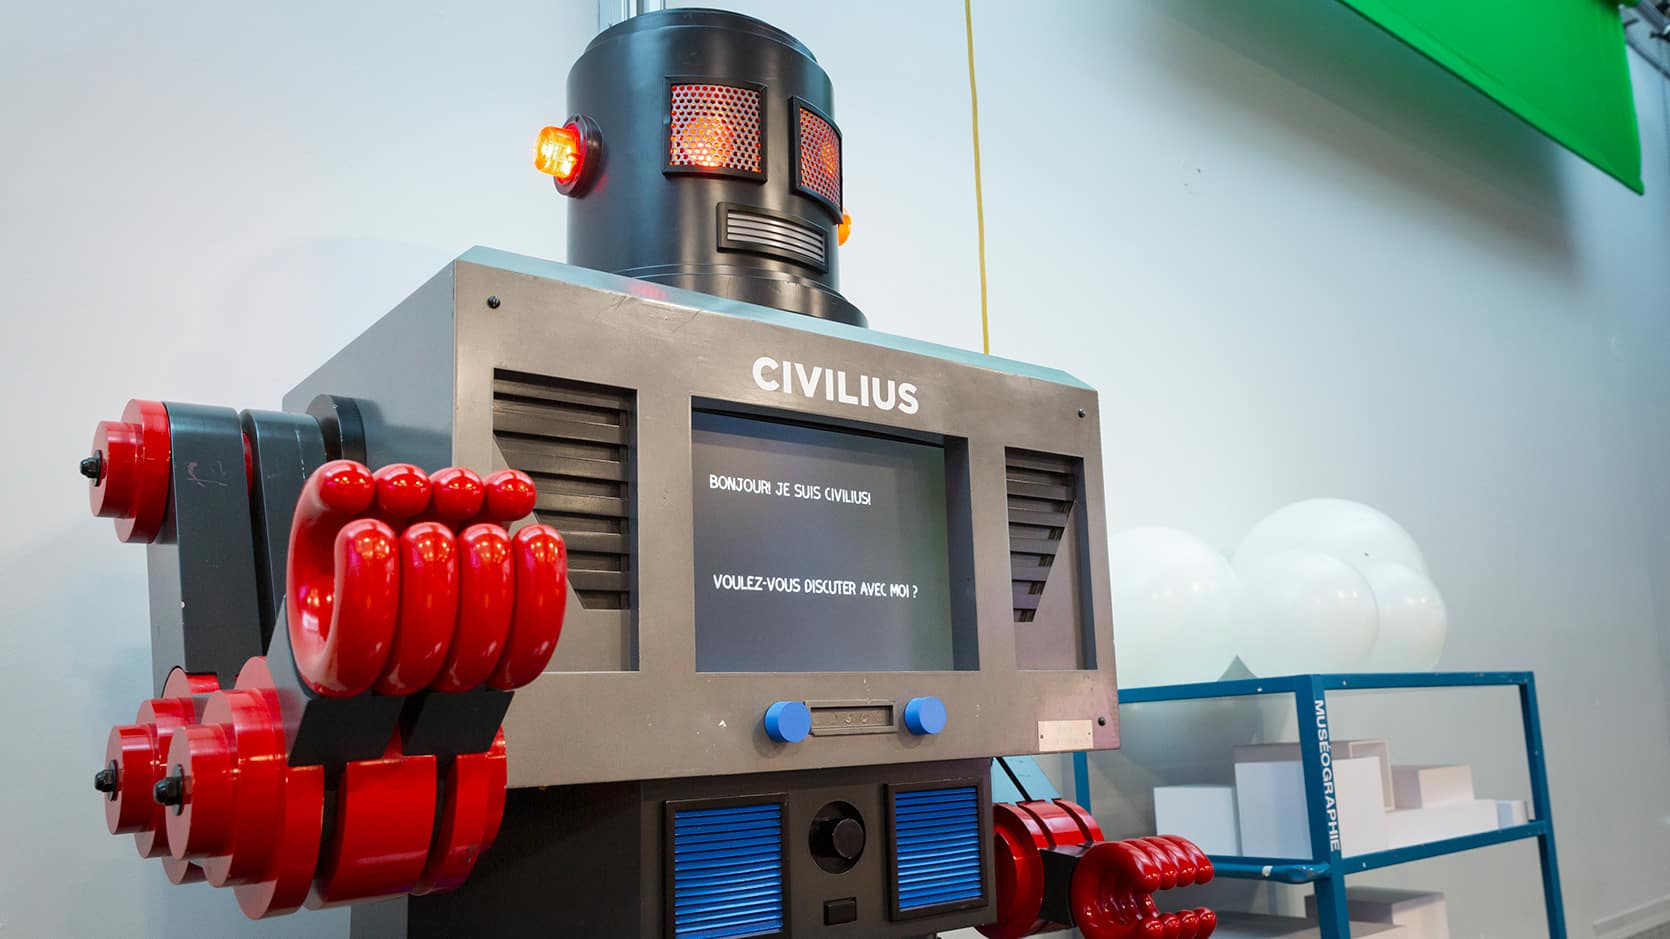 Le robot Civilius qui avait été réalisé par un enfant lors de l'ouverture du Musée en 1988.